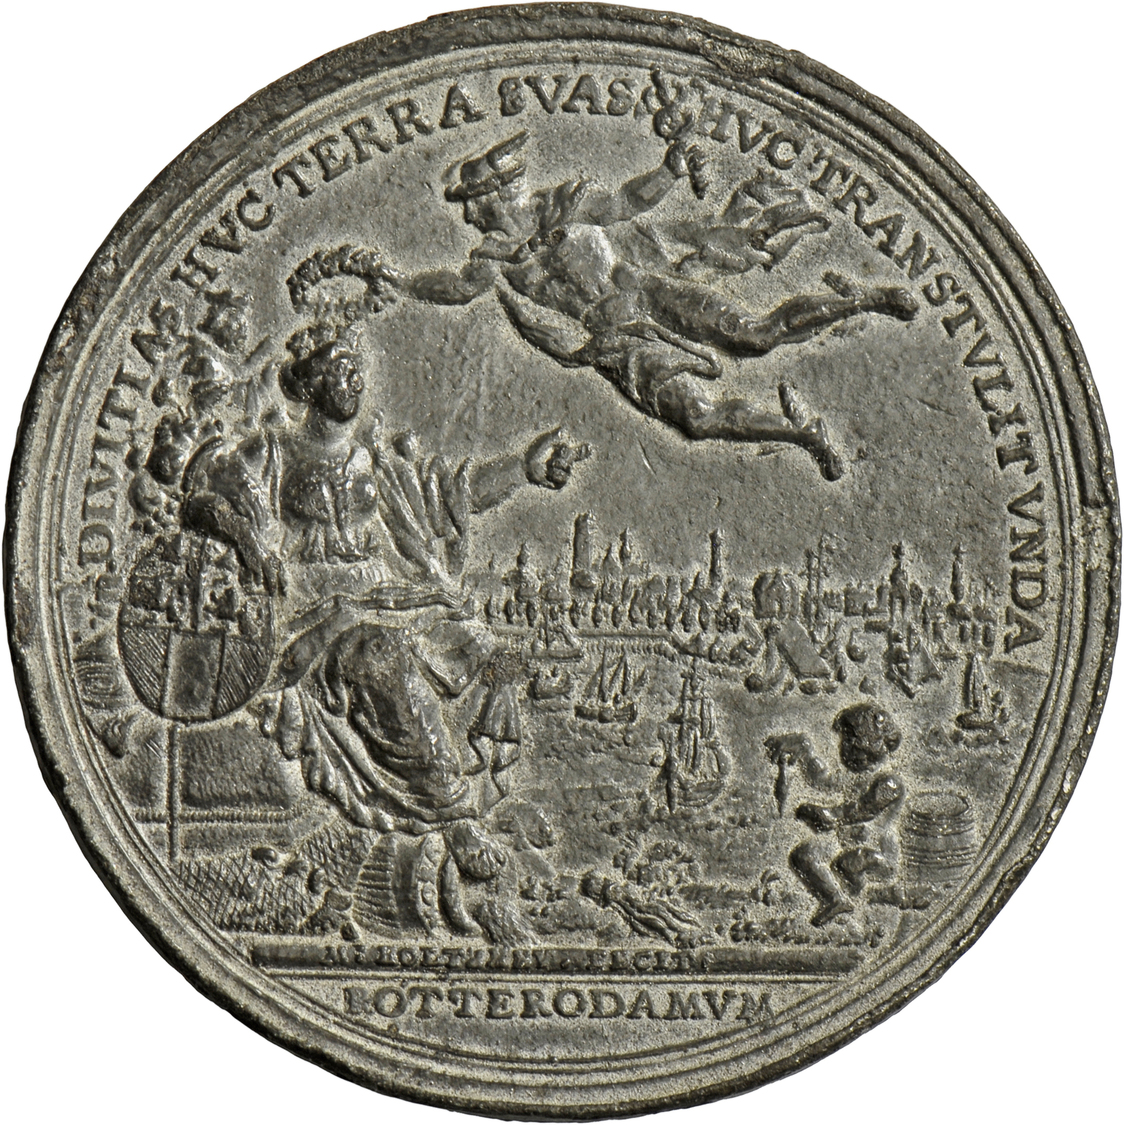 05472 Medaillen Alle Welt: Niederlande, Rotterdam: Zinnmedaille 1736, Stempel Von M. Holtzhey, Auf Die Eröffnung Der Neu - Non Classés